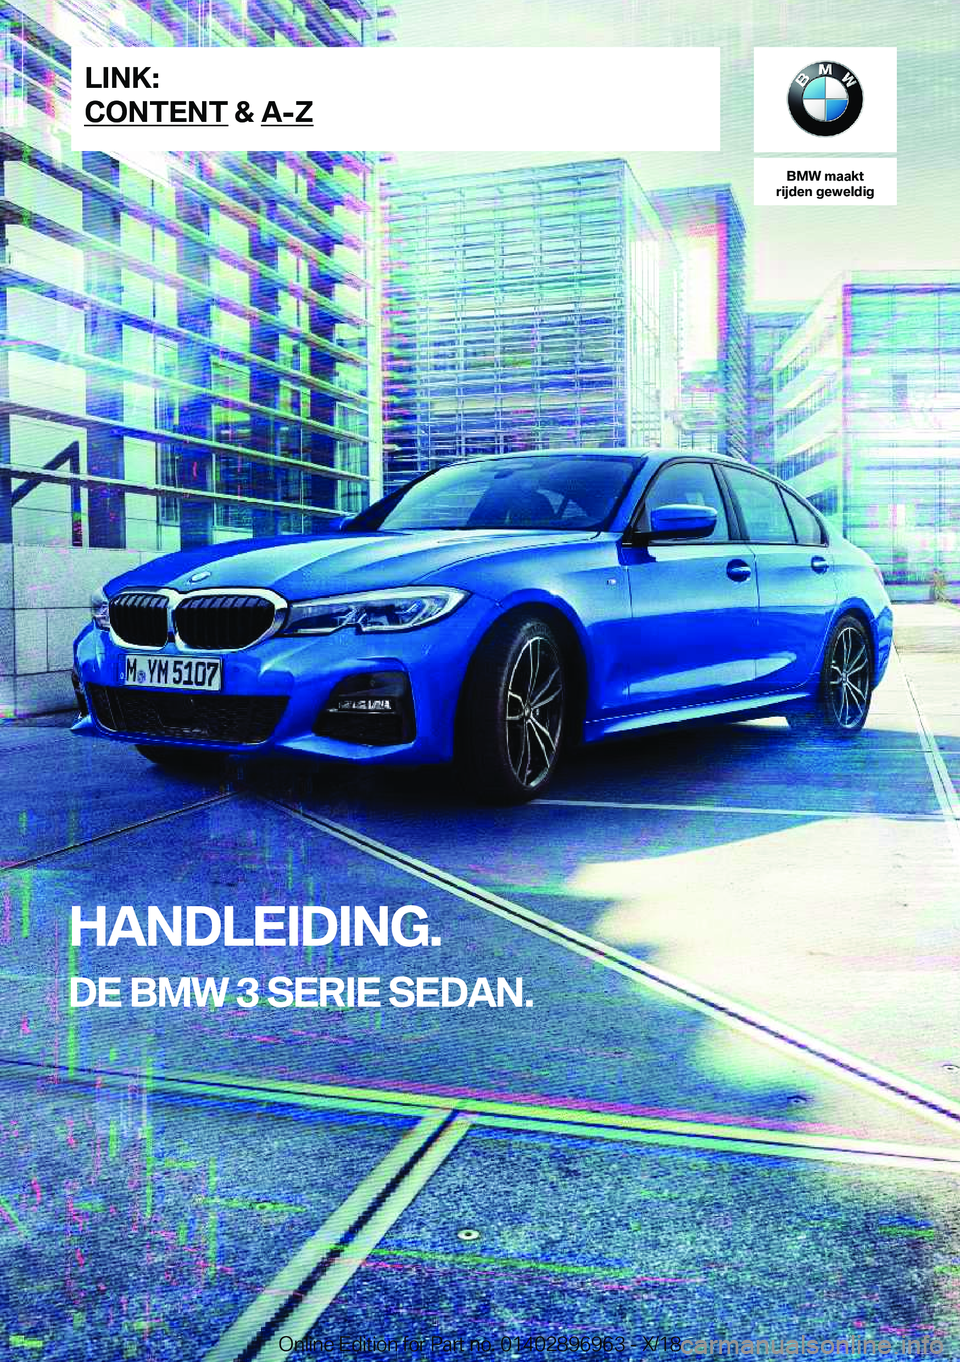 BMW 3 SERIES 2019  Instructieboekjes (in Dutch) �B�M�W��m�a�a�k�t
�r�i�j�d�e�n��g�e�w�e�l�d�i�g
�H�A�N�D�L�E�I�D�I�N�G�.
�D�E��B�M�W��3��S�E�R�I�E��S�E�D�A�N�.�L�I�N�K�:
�C�O�N�T�E�N�T��&��A�-�Z�O�n�l�i�n�e��E�d�i�t�i�o�n��f�o�r��P�a�r�t